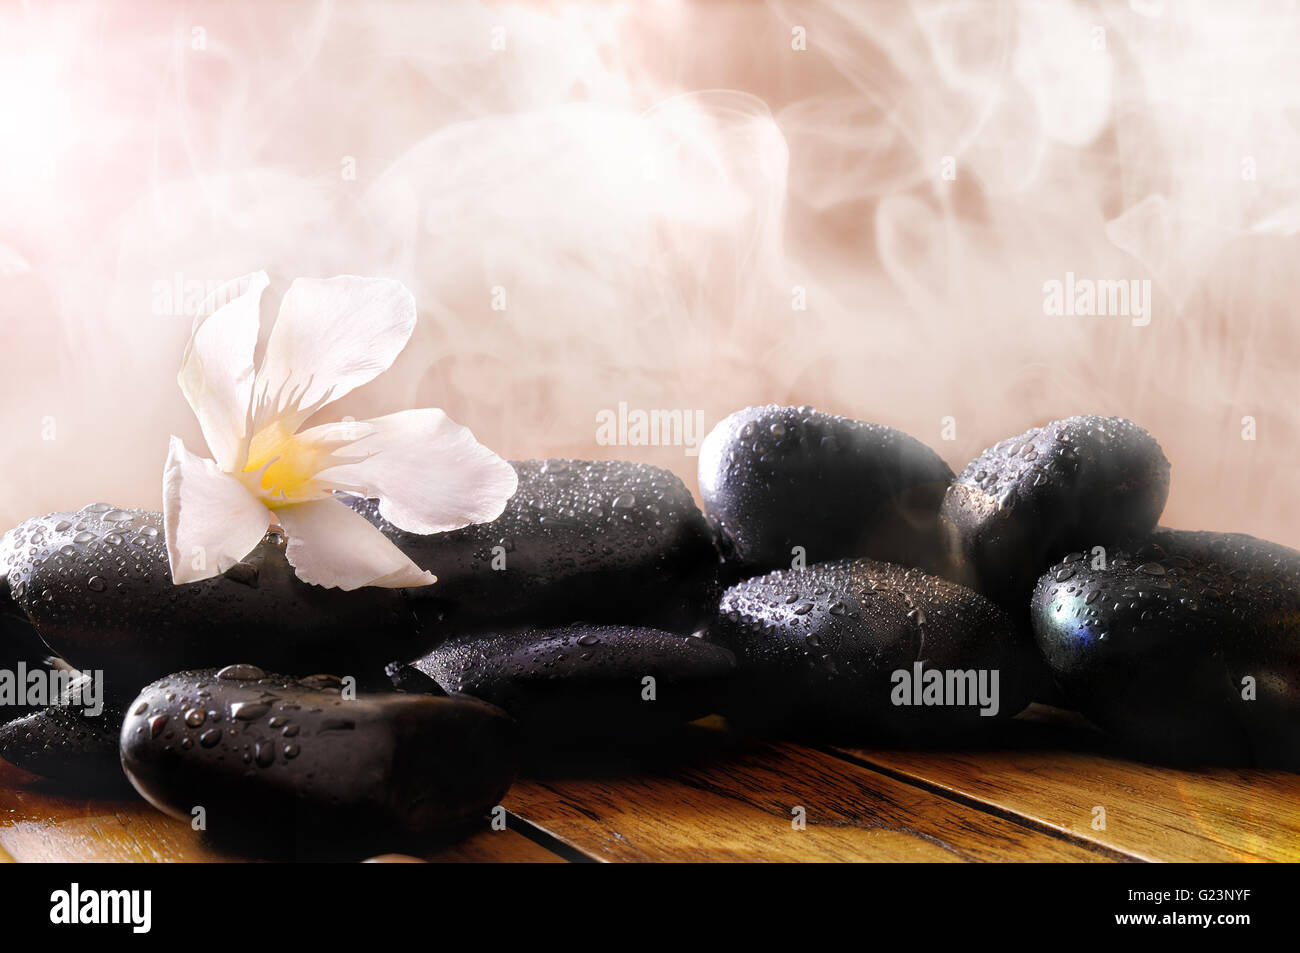 Gruppe von schwarzen Steinen auf Holz-Basis, Dampf-Hintergrund. Sauna, Therapie, Entspannung und Gesundheit Konzept. Stockfoto